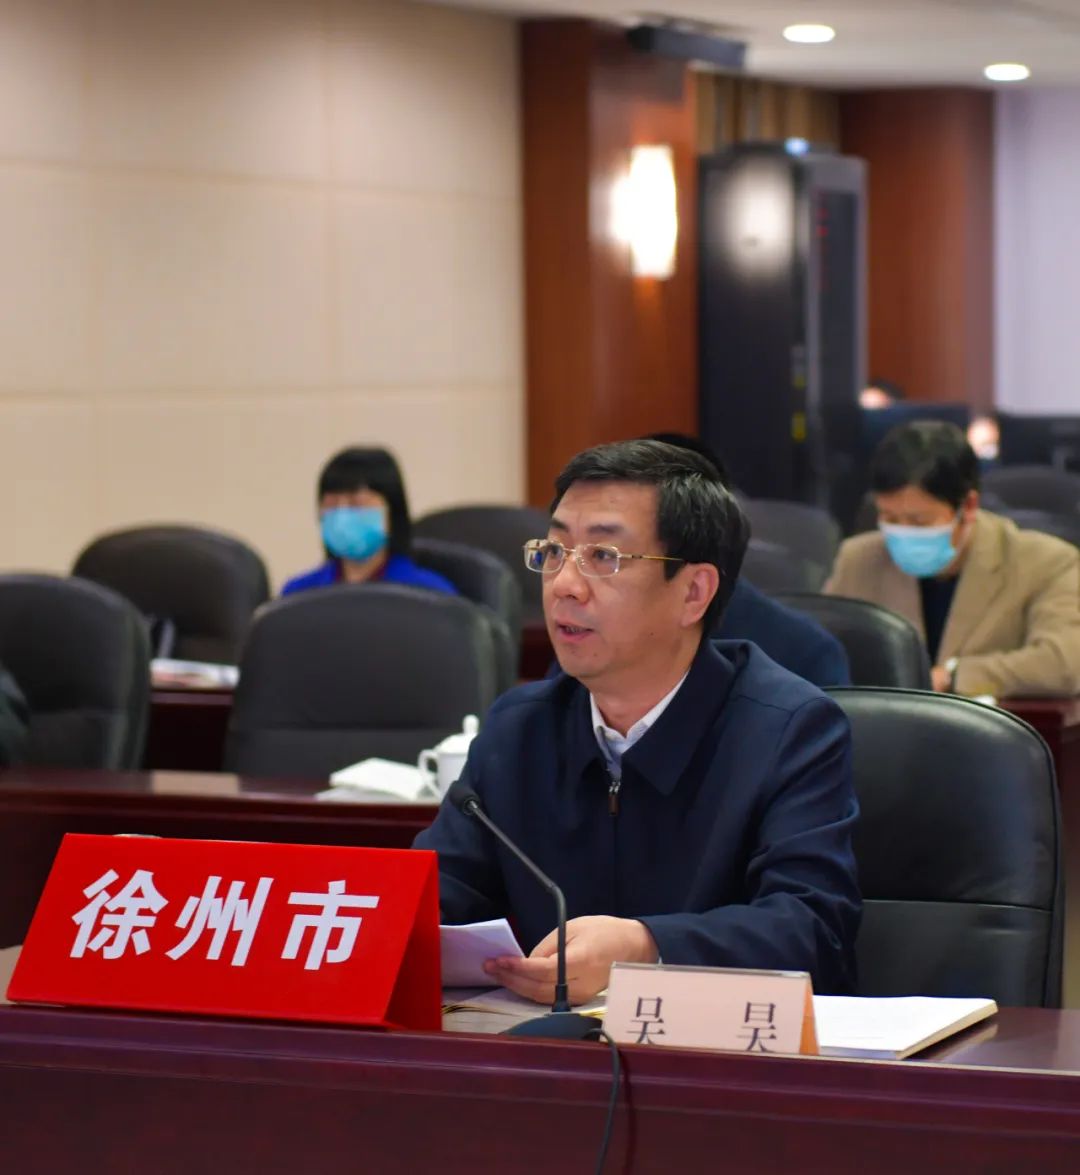 吴昊在发言中指出,近年来,徐州市委市政府大力实施科教兴市战略,认真